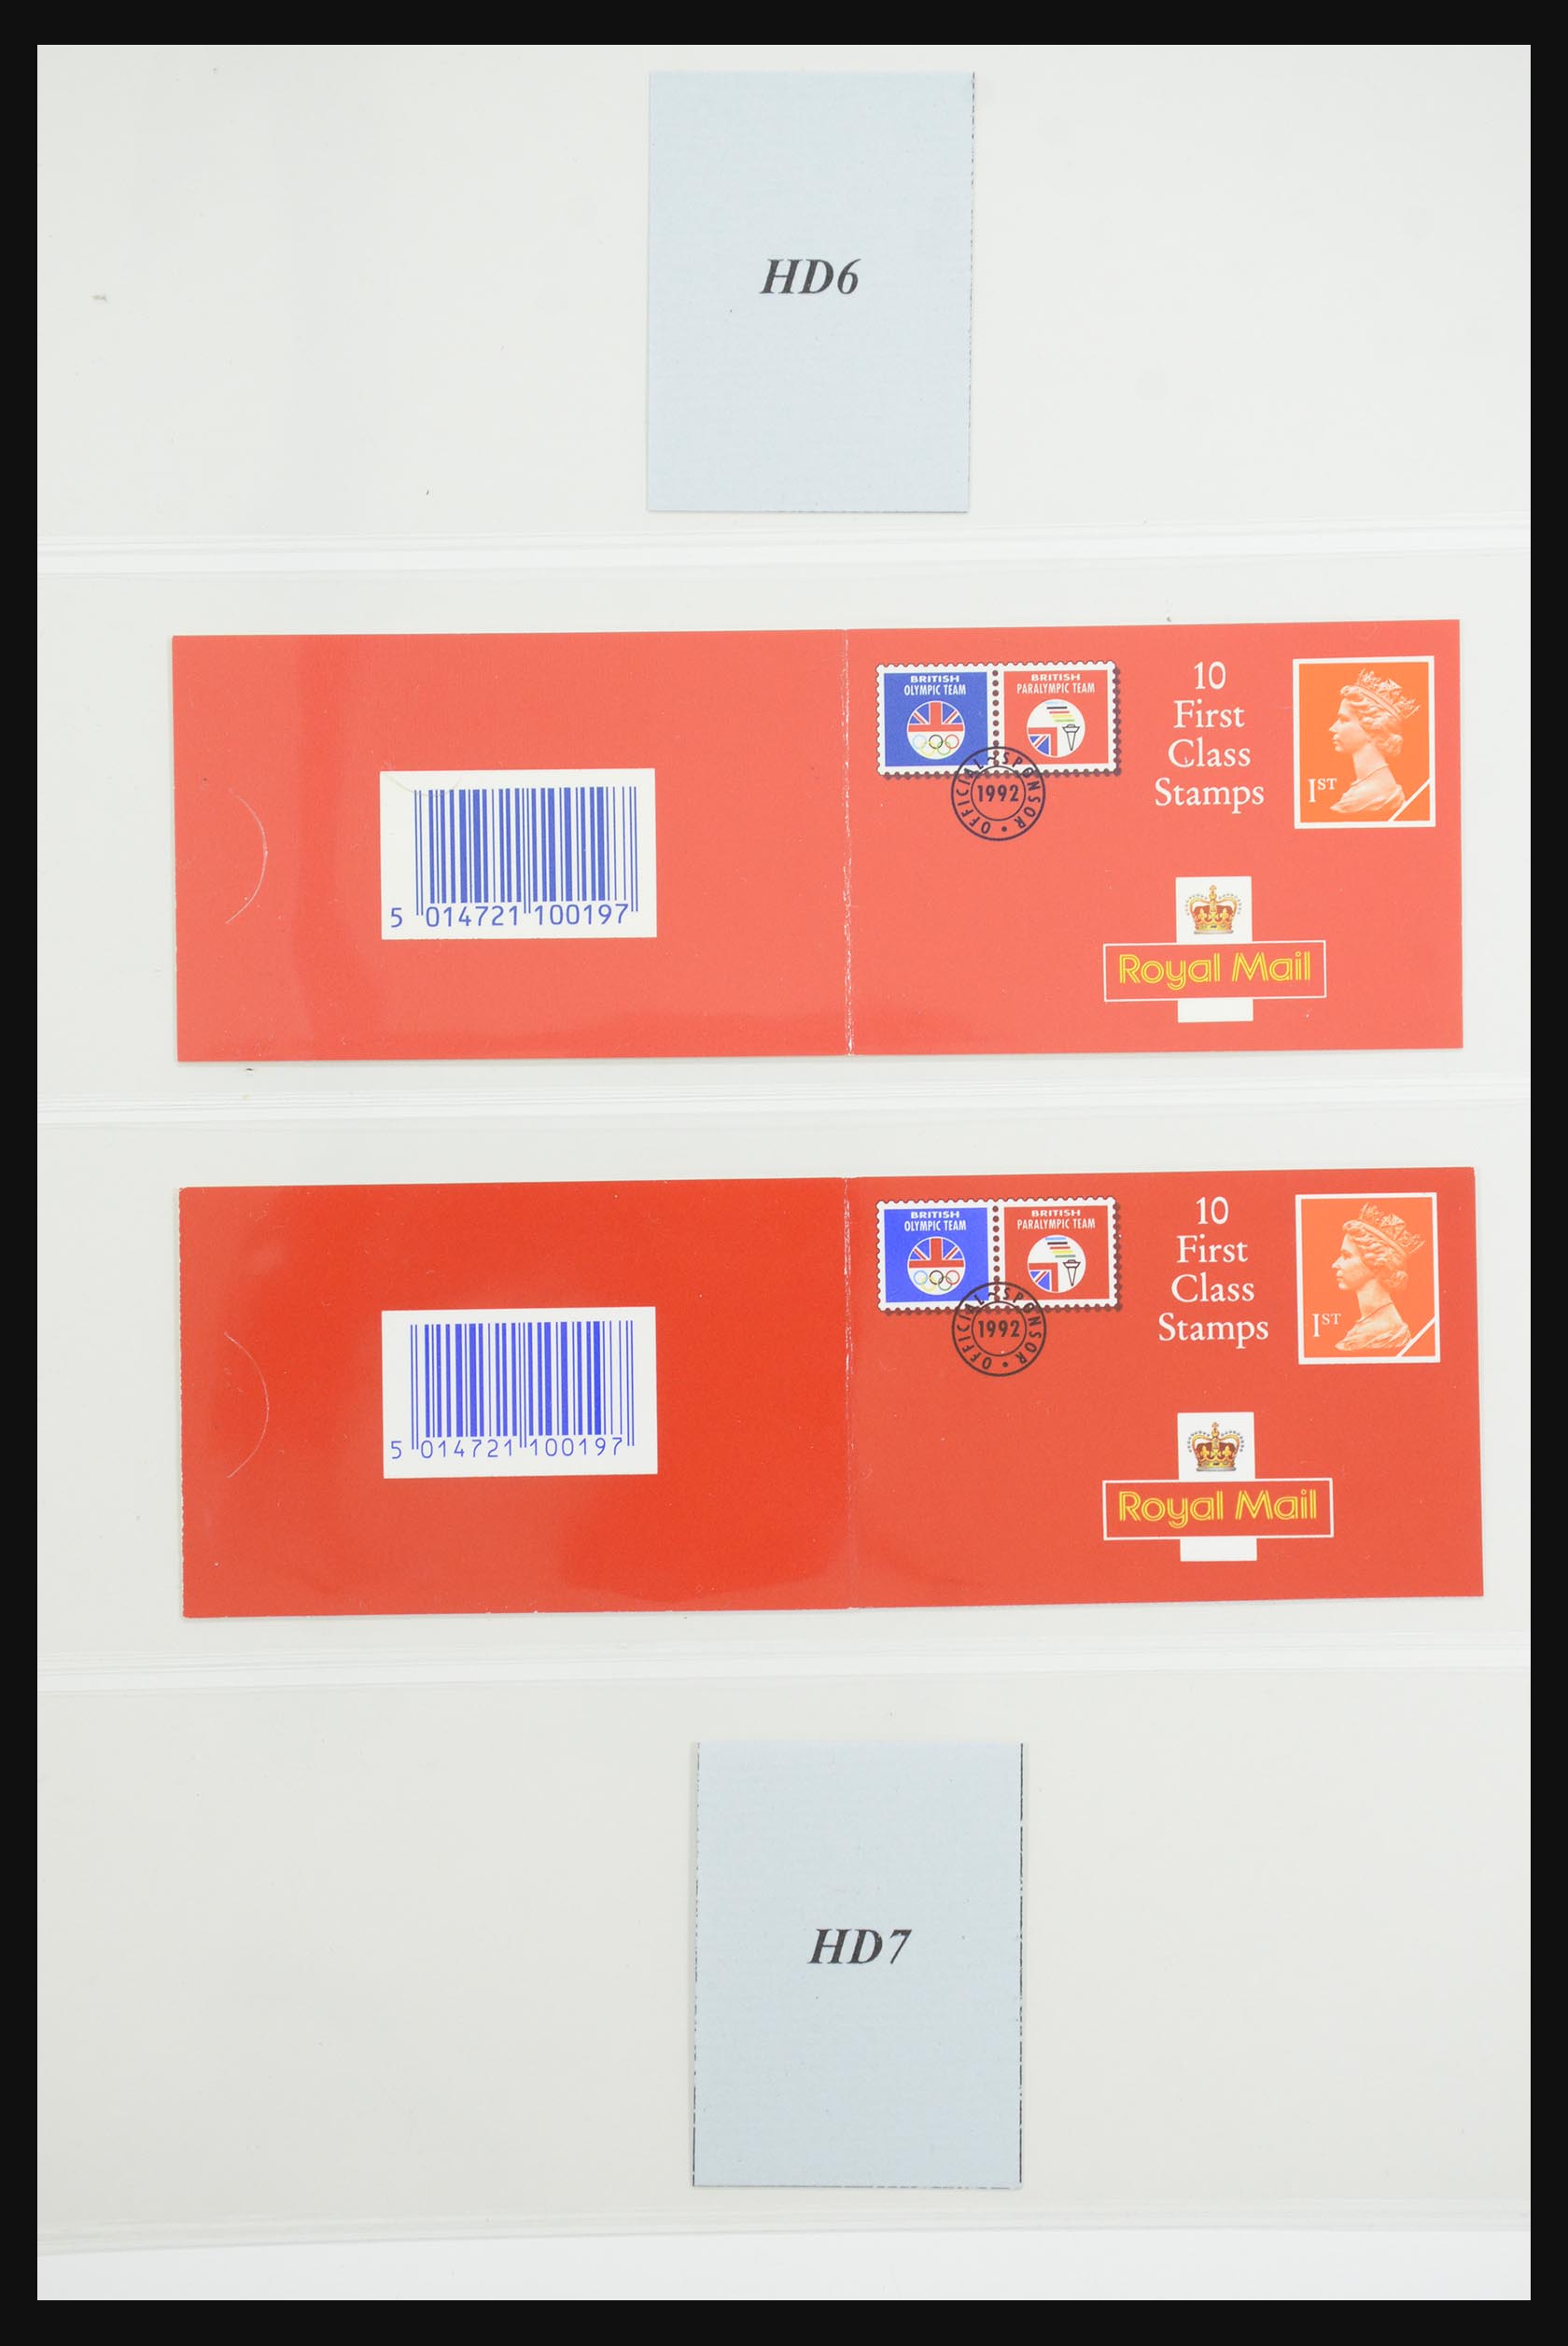 31960 107 - 31960 Engeland postzegelboekjes 1989-2000.